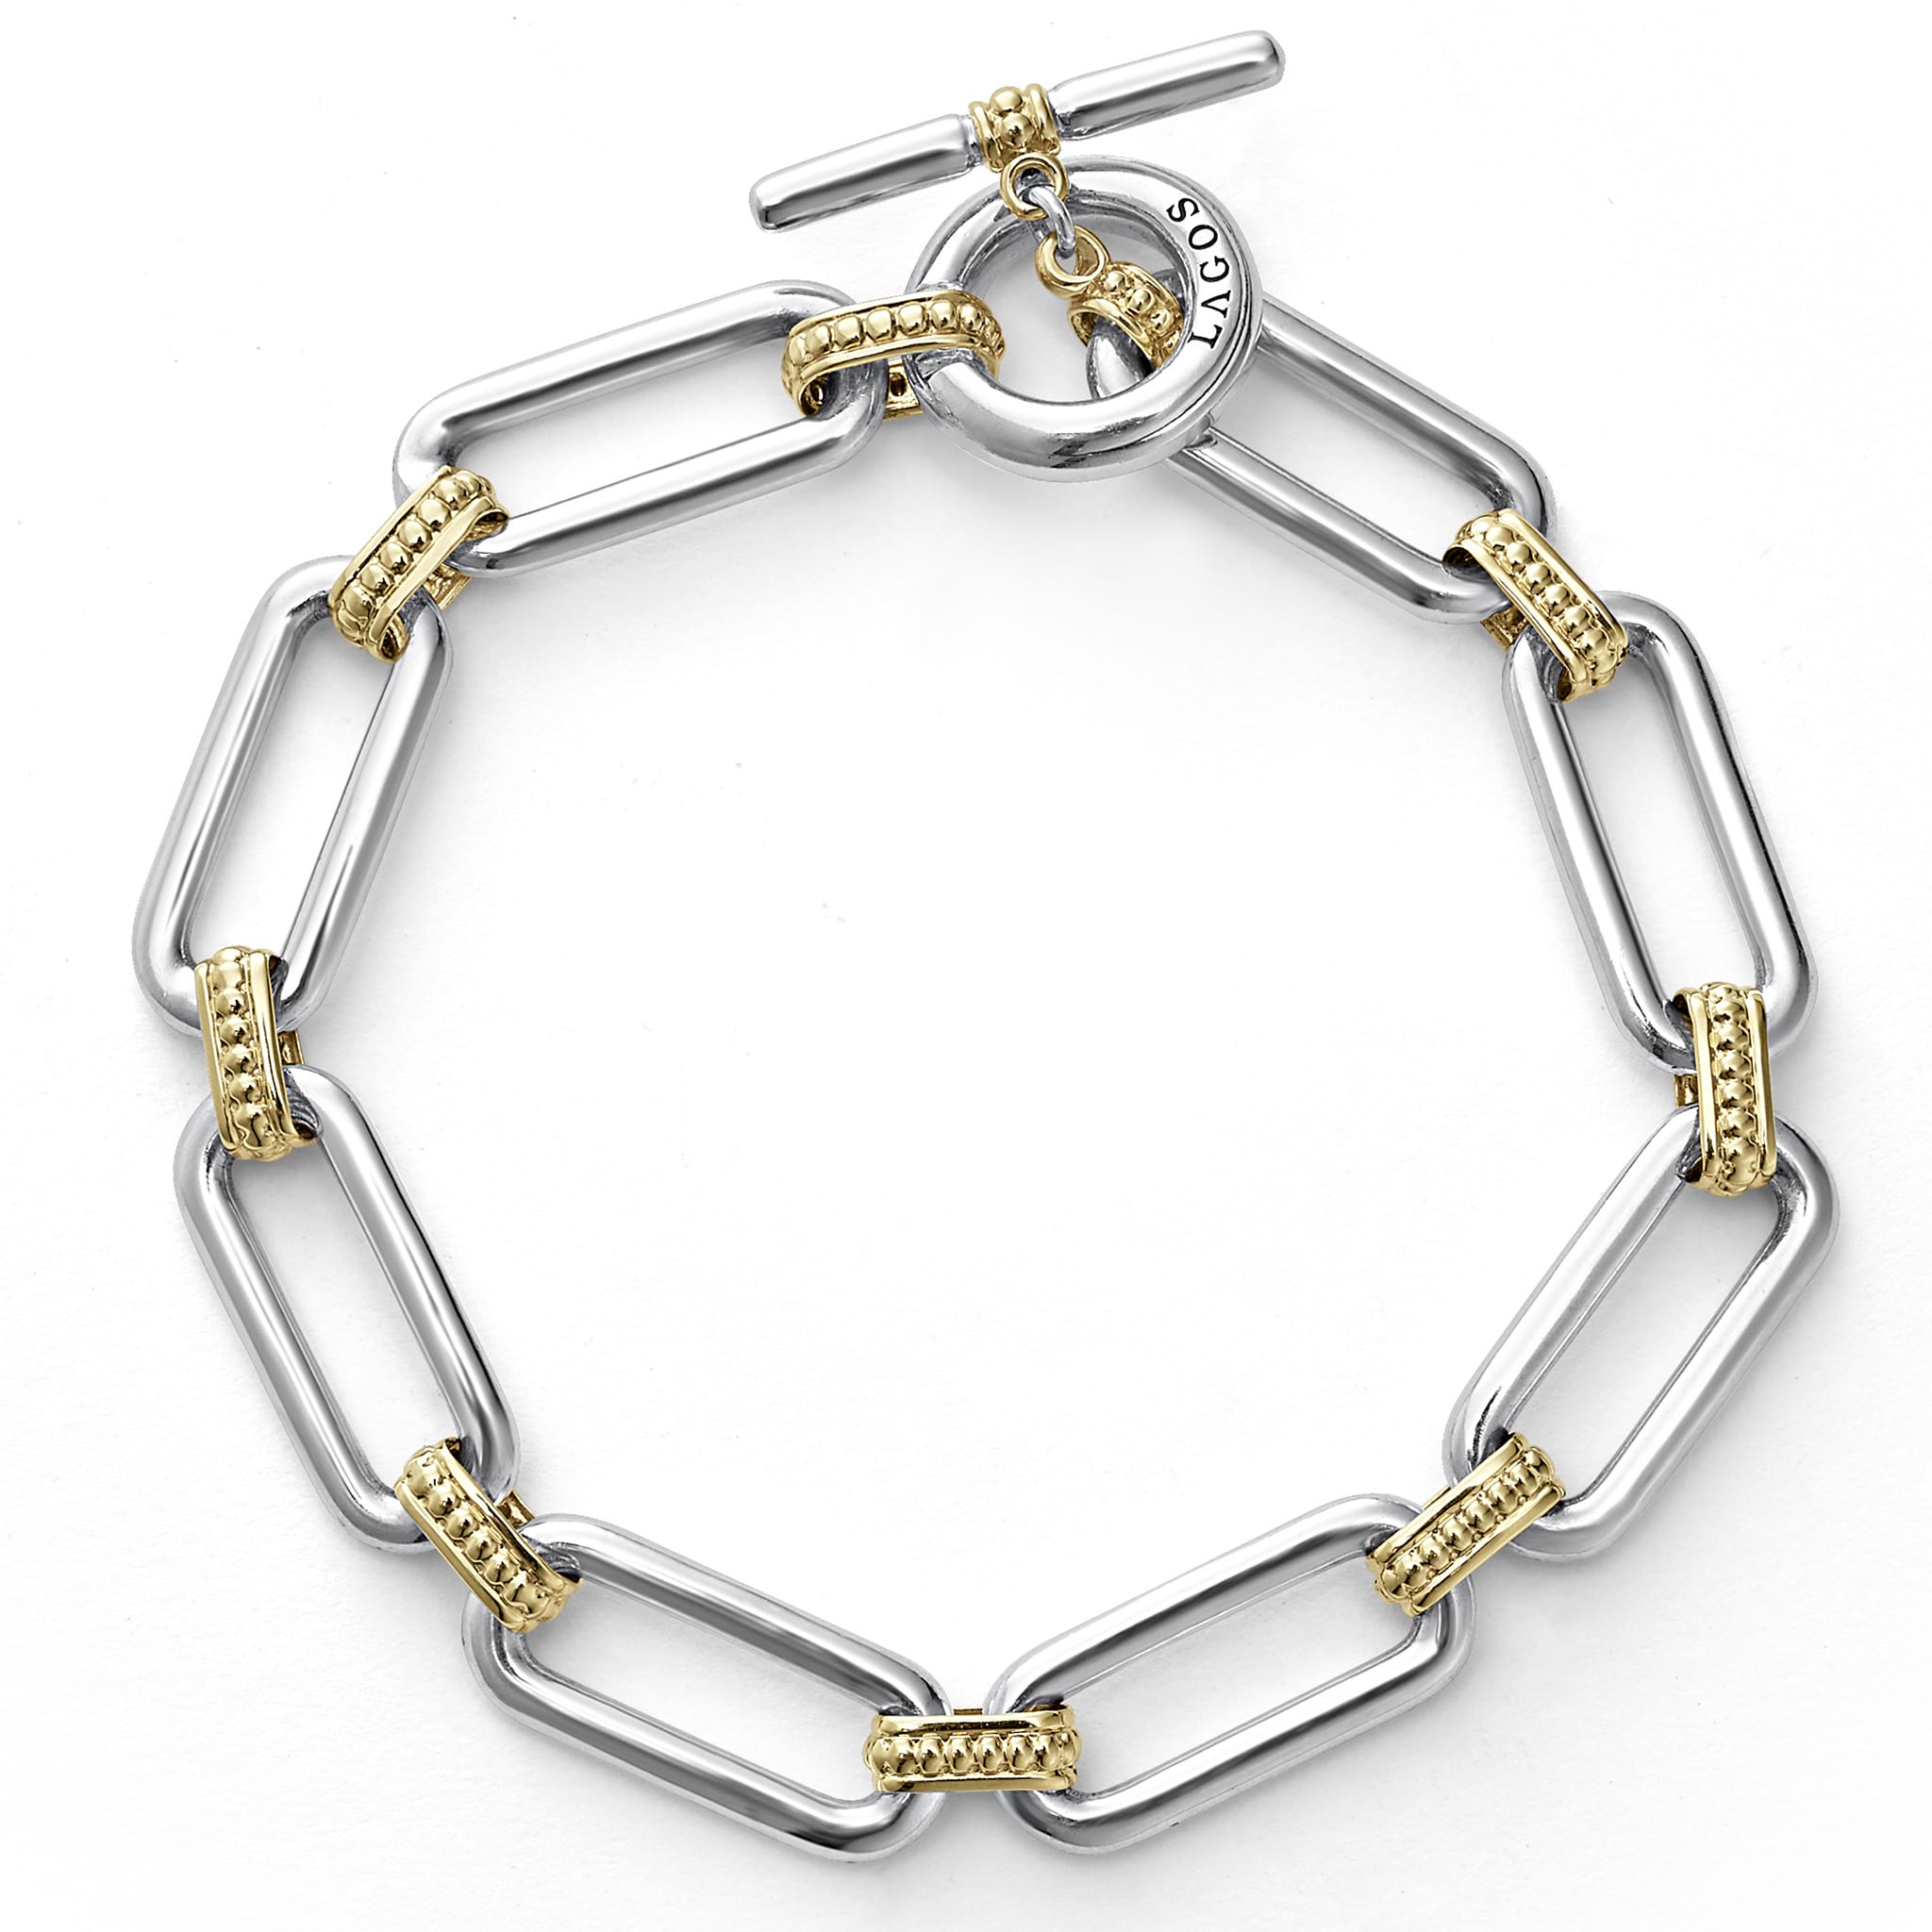 Louis Vuitton Chain Links Bracelet, Gold, M